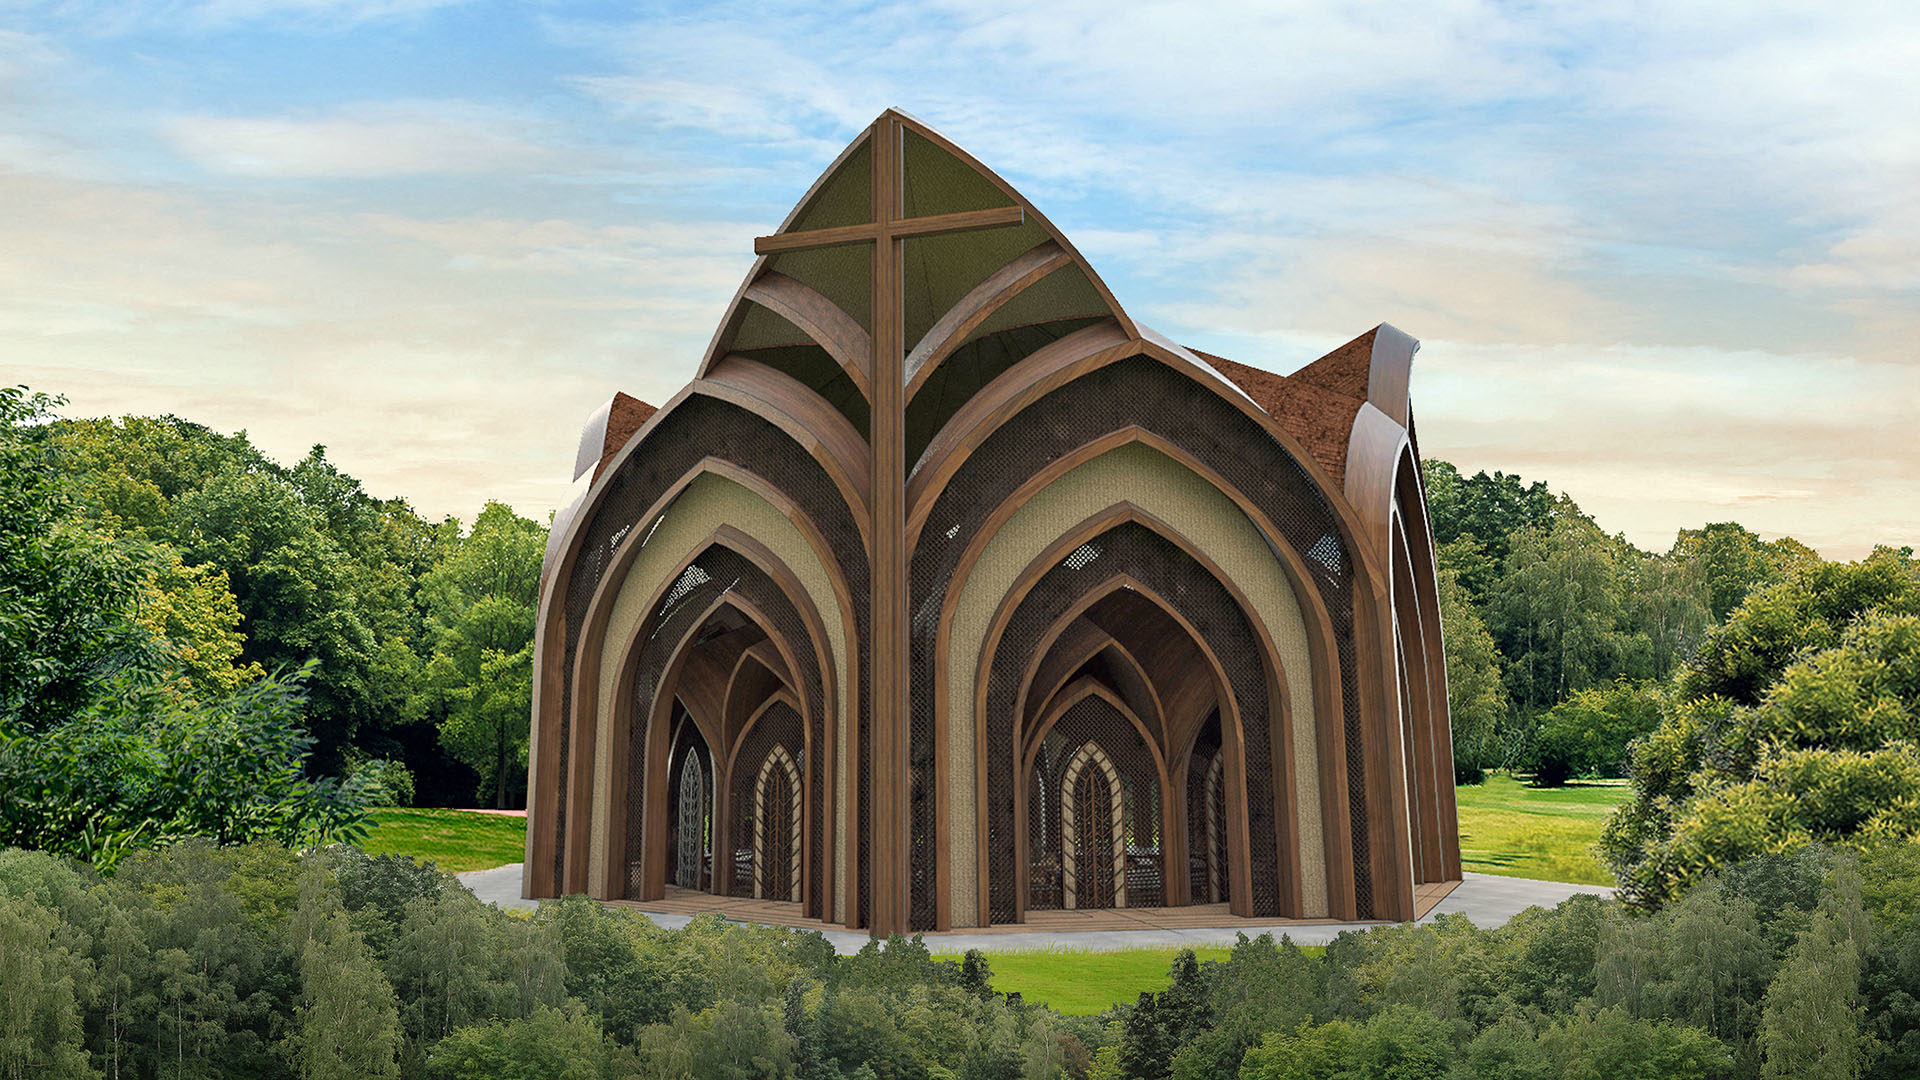 La cathédrale doit être achevée en 2022. Le projet est estimé à 190'000 francs. | © Creatos Arquitetura